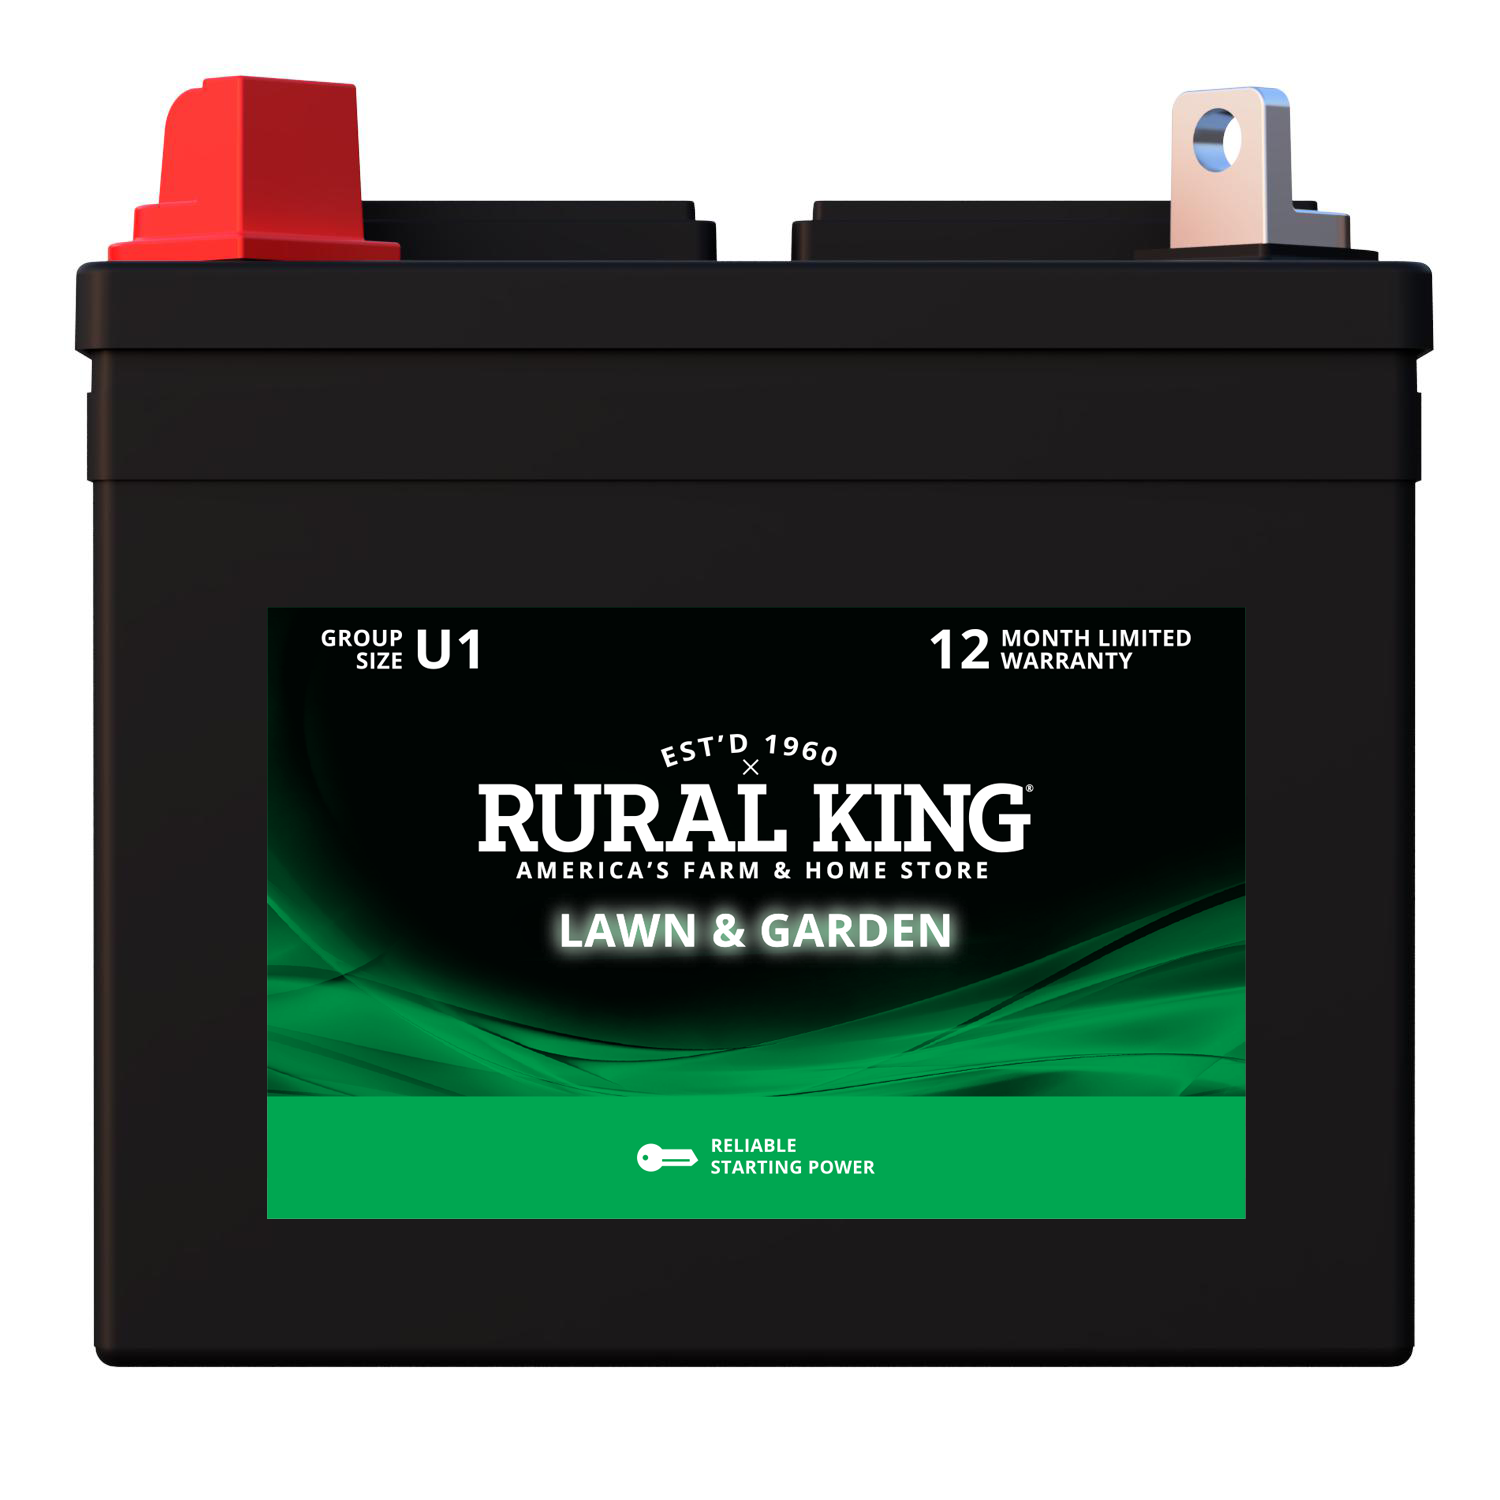 Rural King Lawn & Garden Battery - U1L-LT